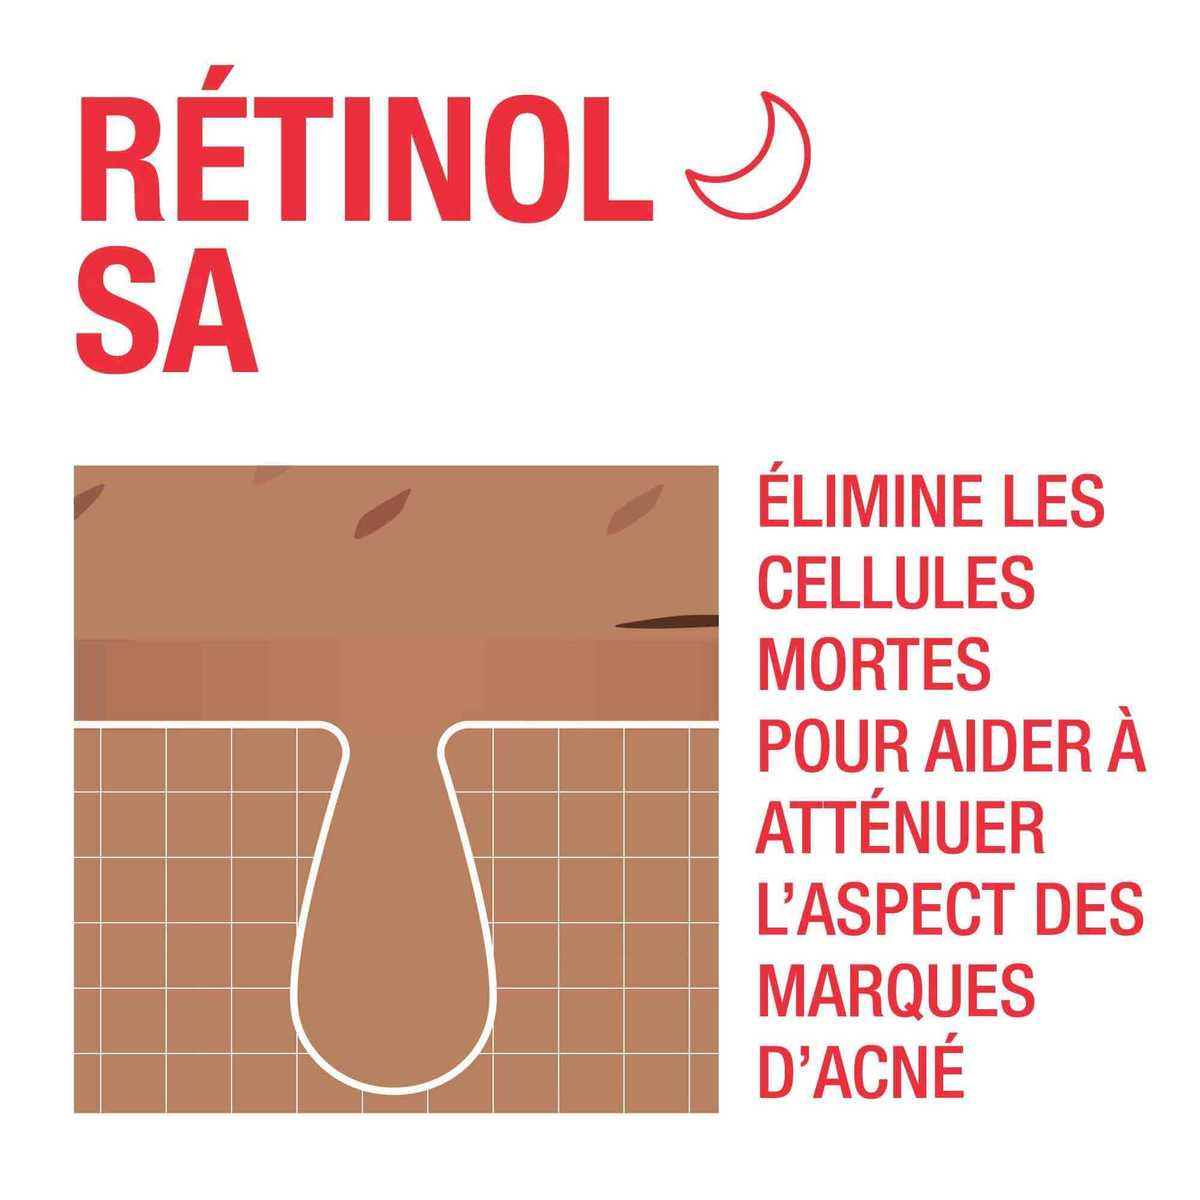 Image montrant comment le Retinol SA élimine les cellules mortes de la peau pour améliorer l'aspect des marques laissées par l'acné